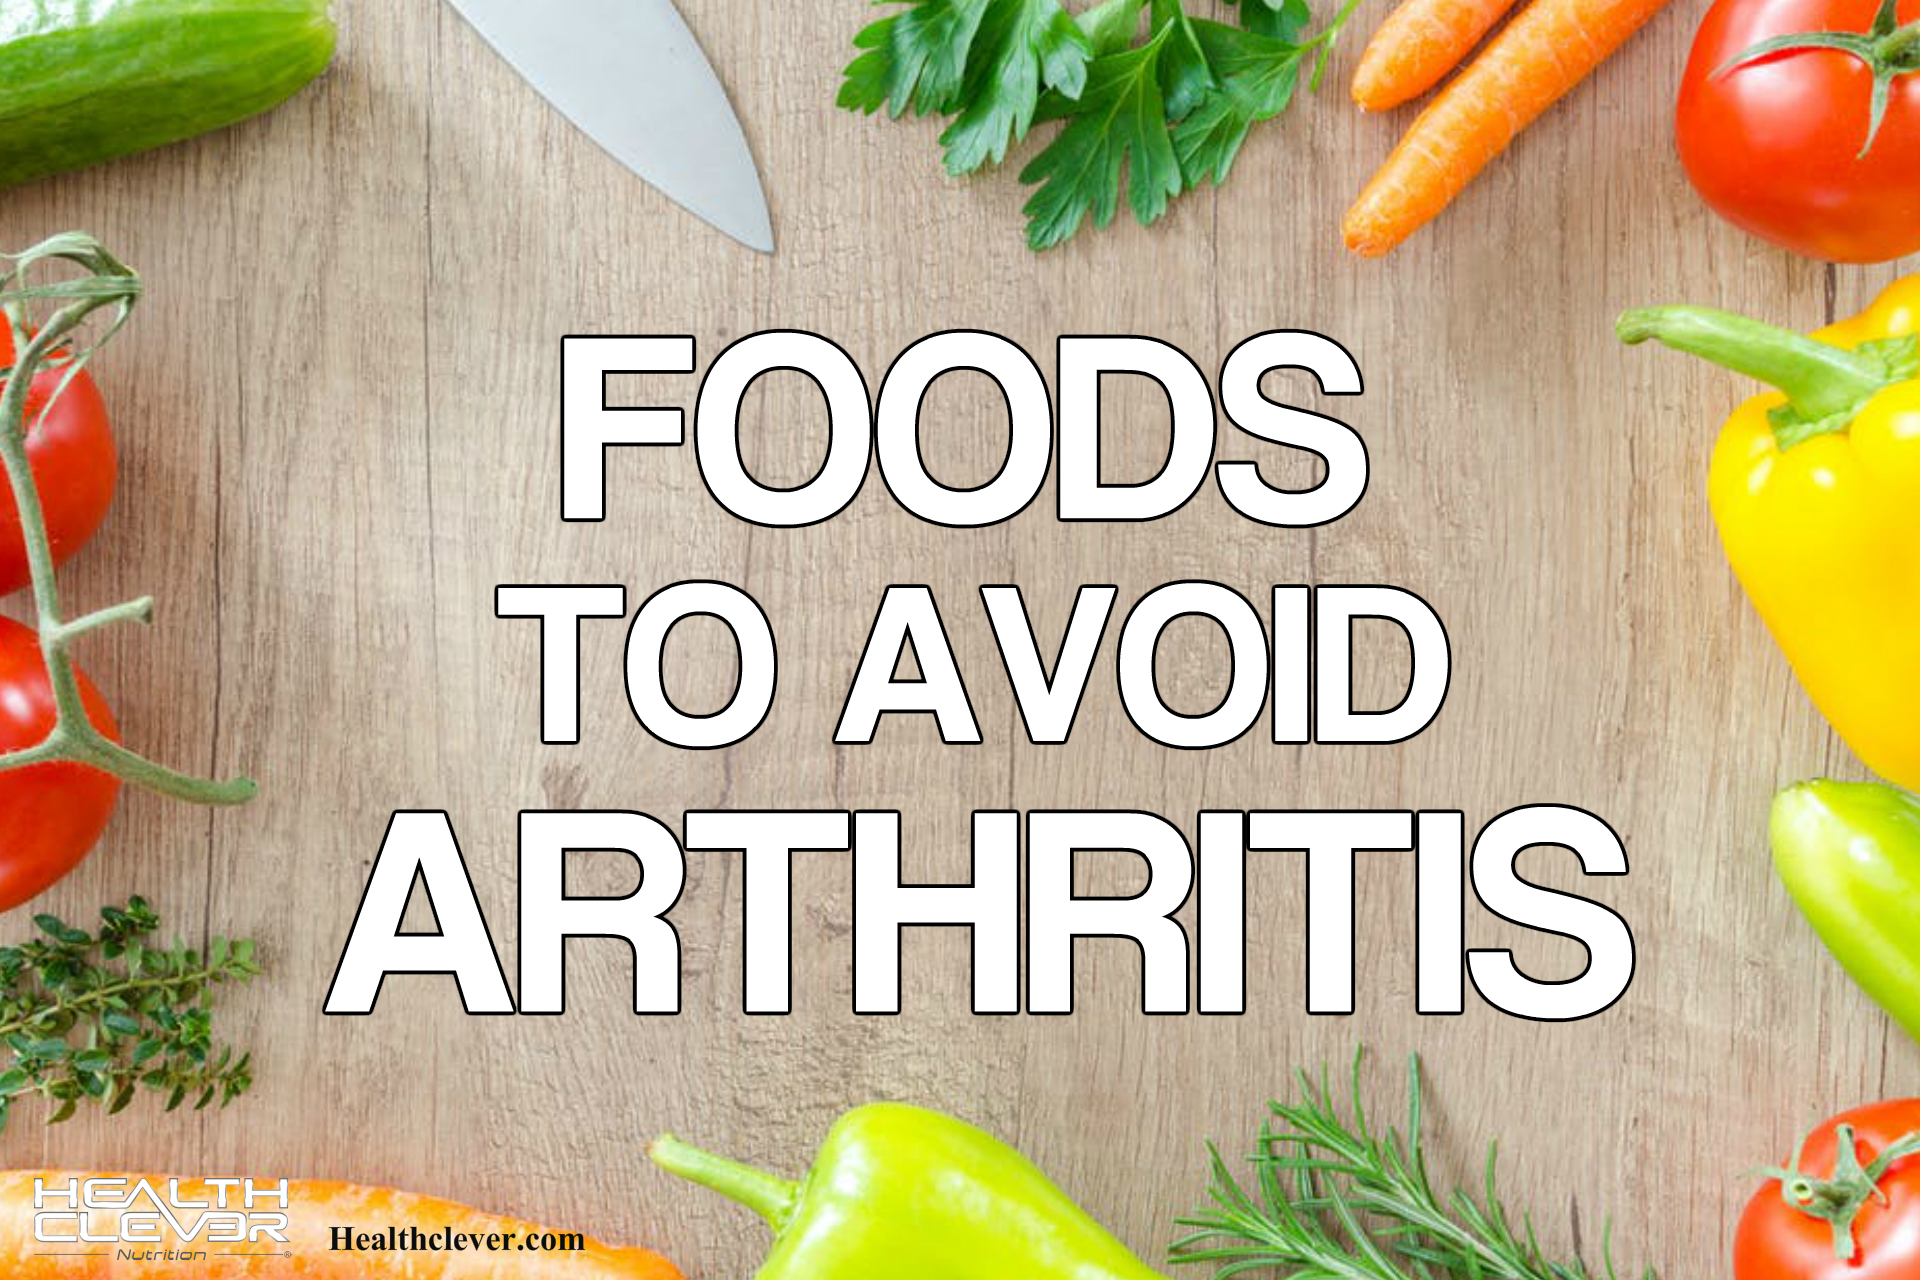 Foods to Avoid Arthritis